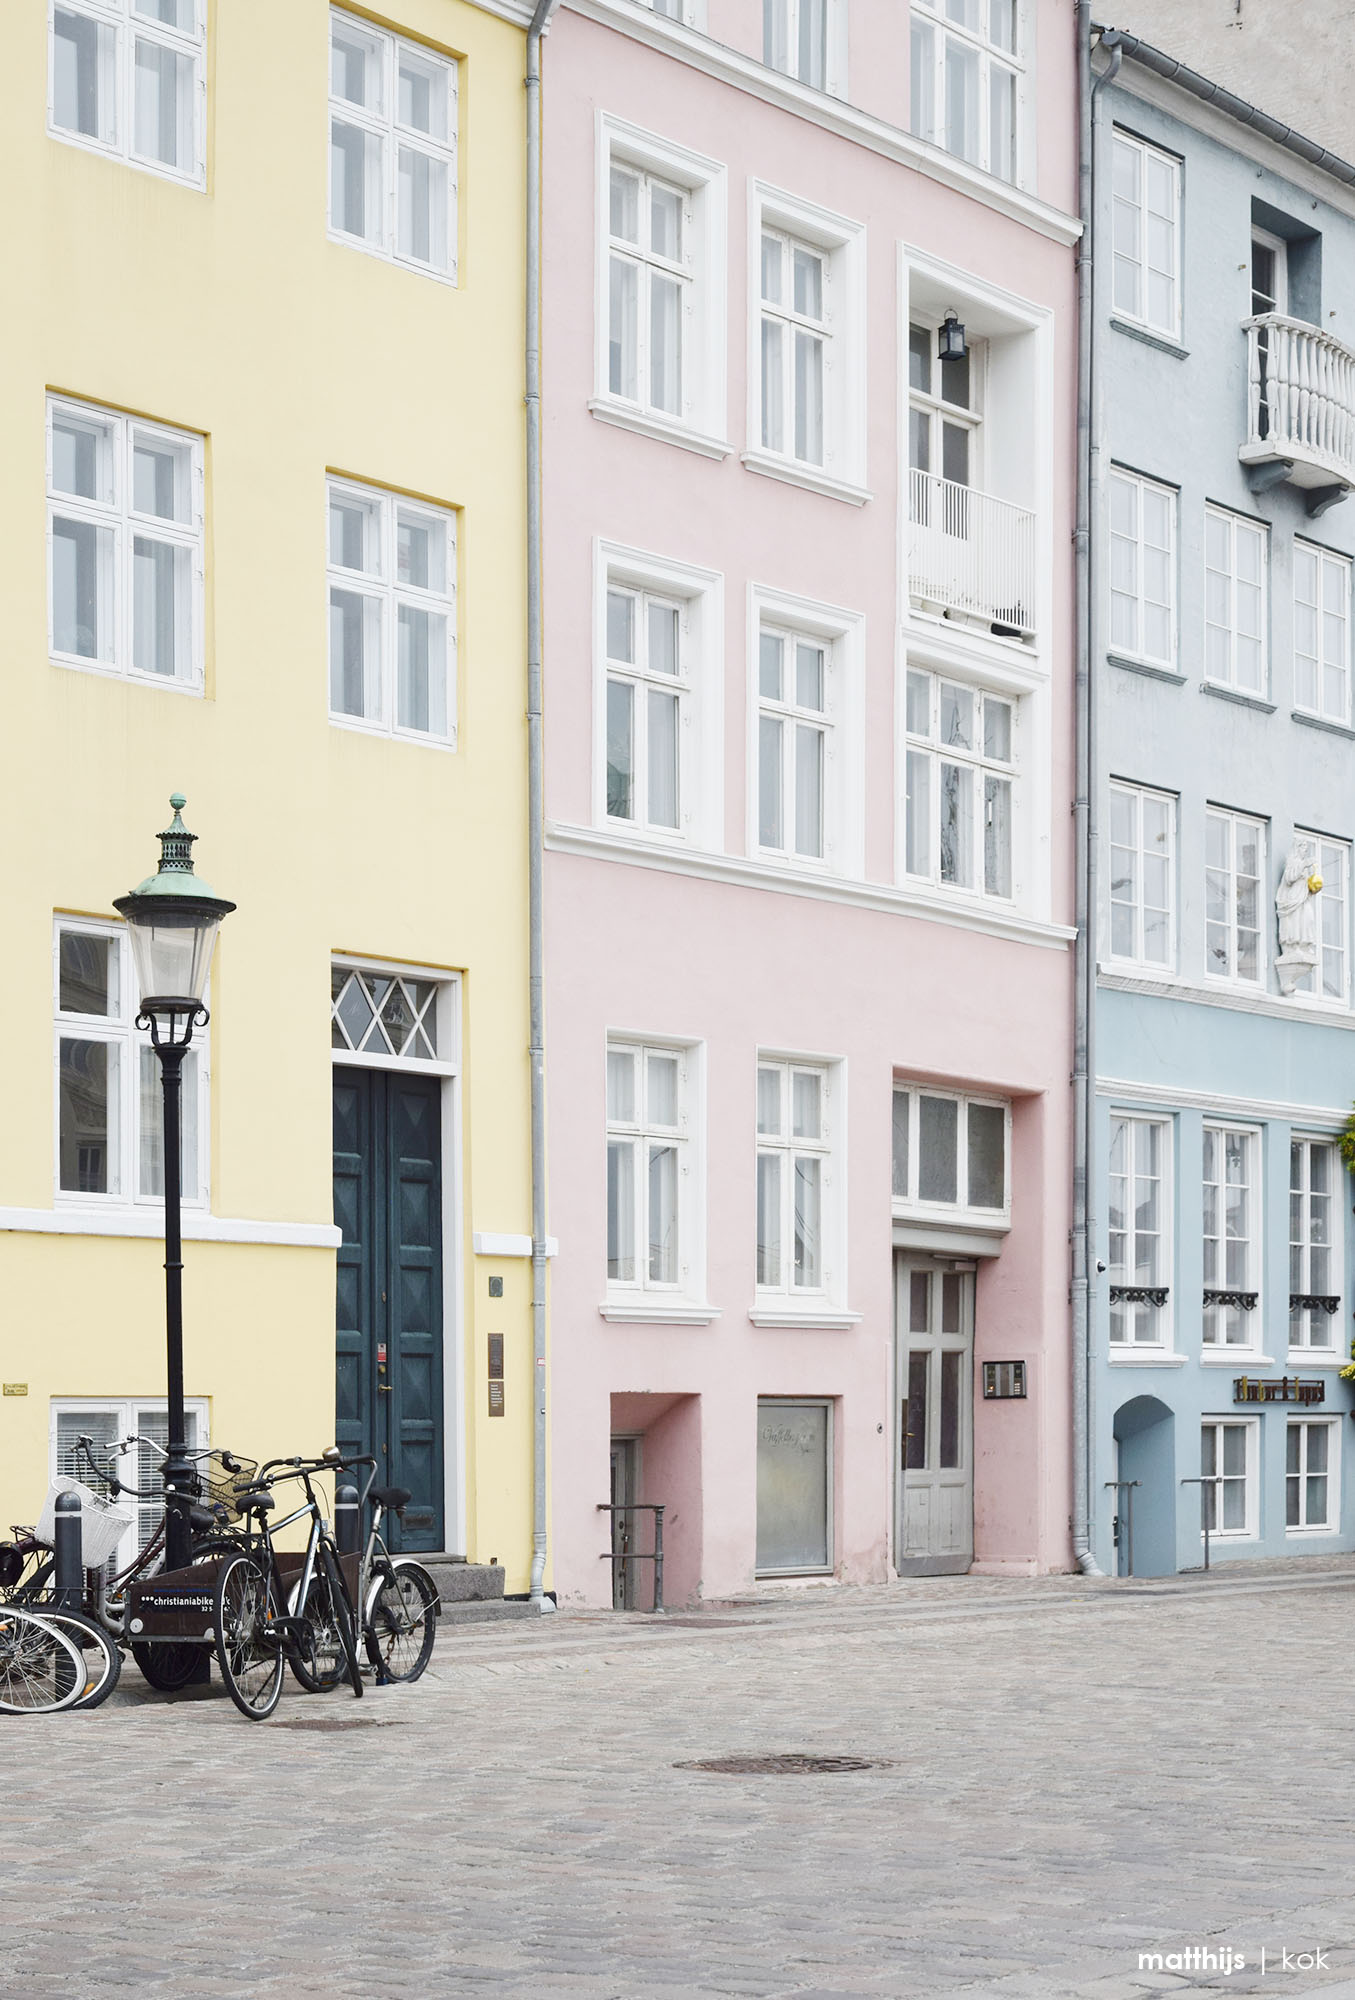 Nyhavn, Copenhagen | Photo by Matthijs Kok